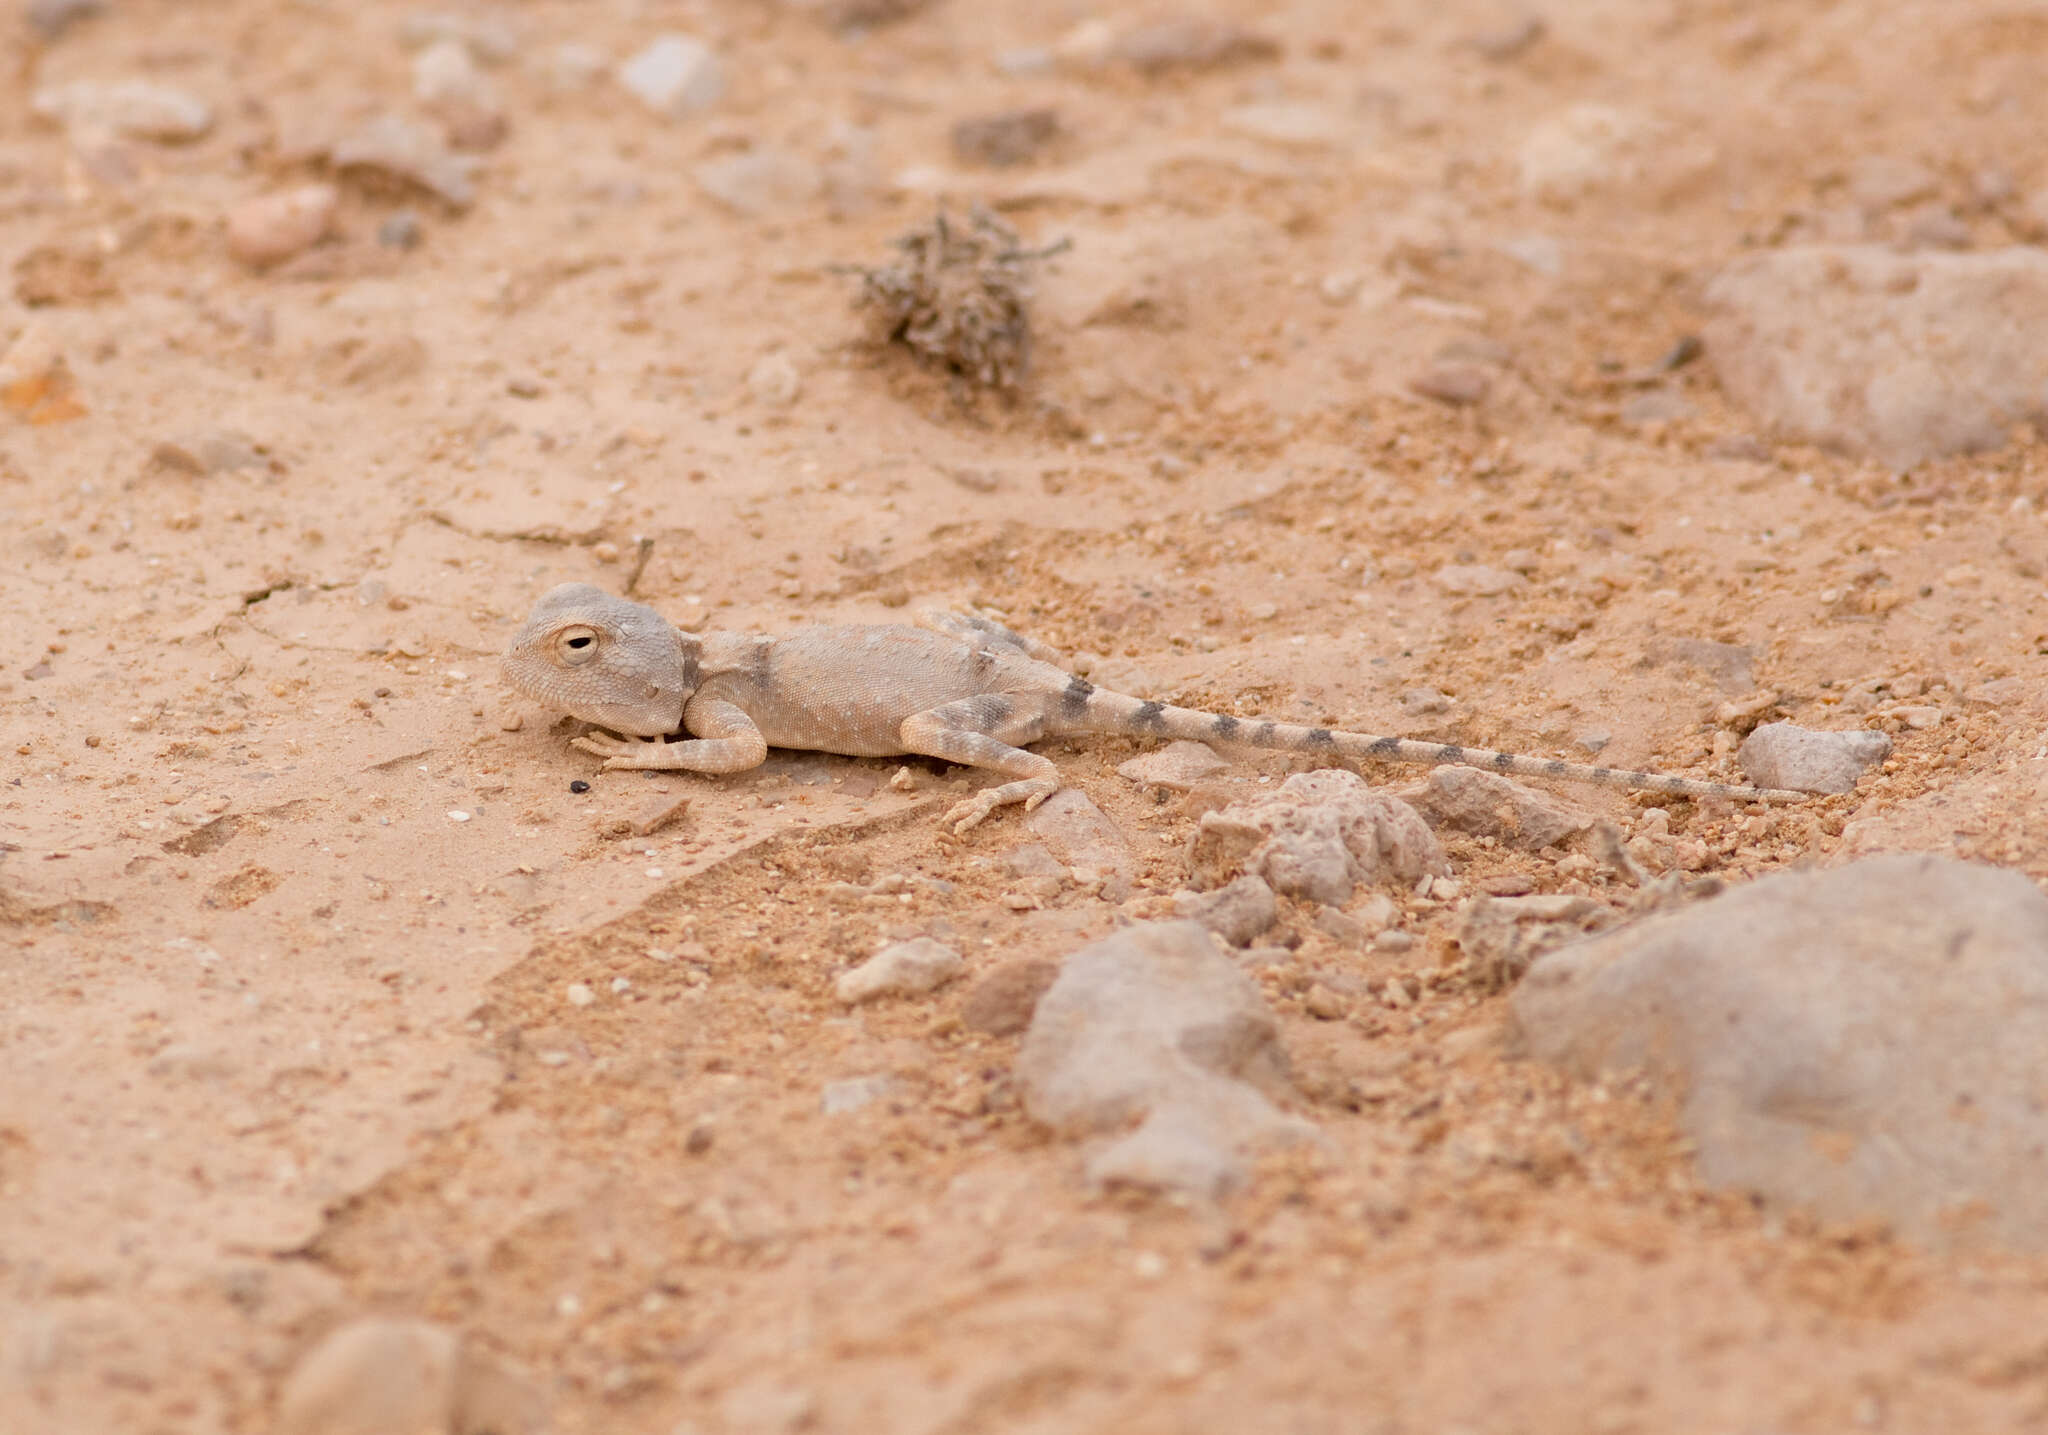 Image of Desert Agama